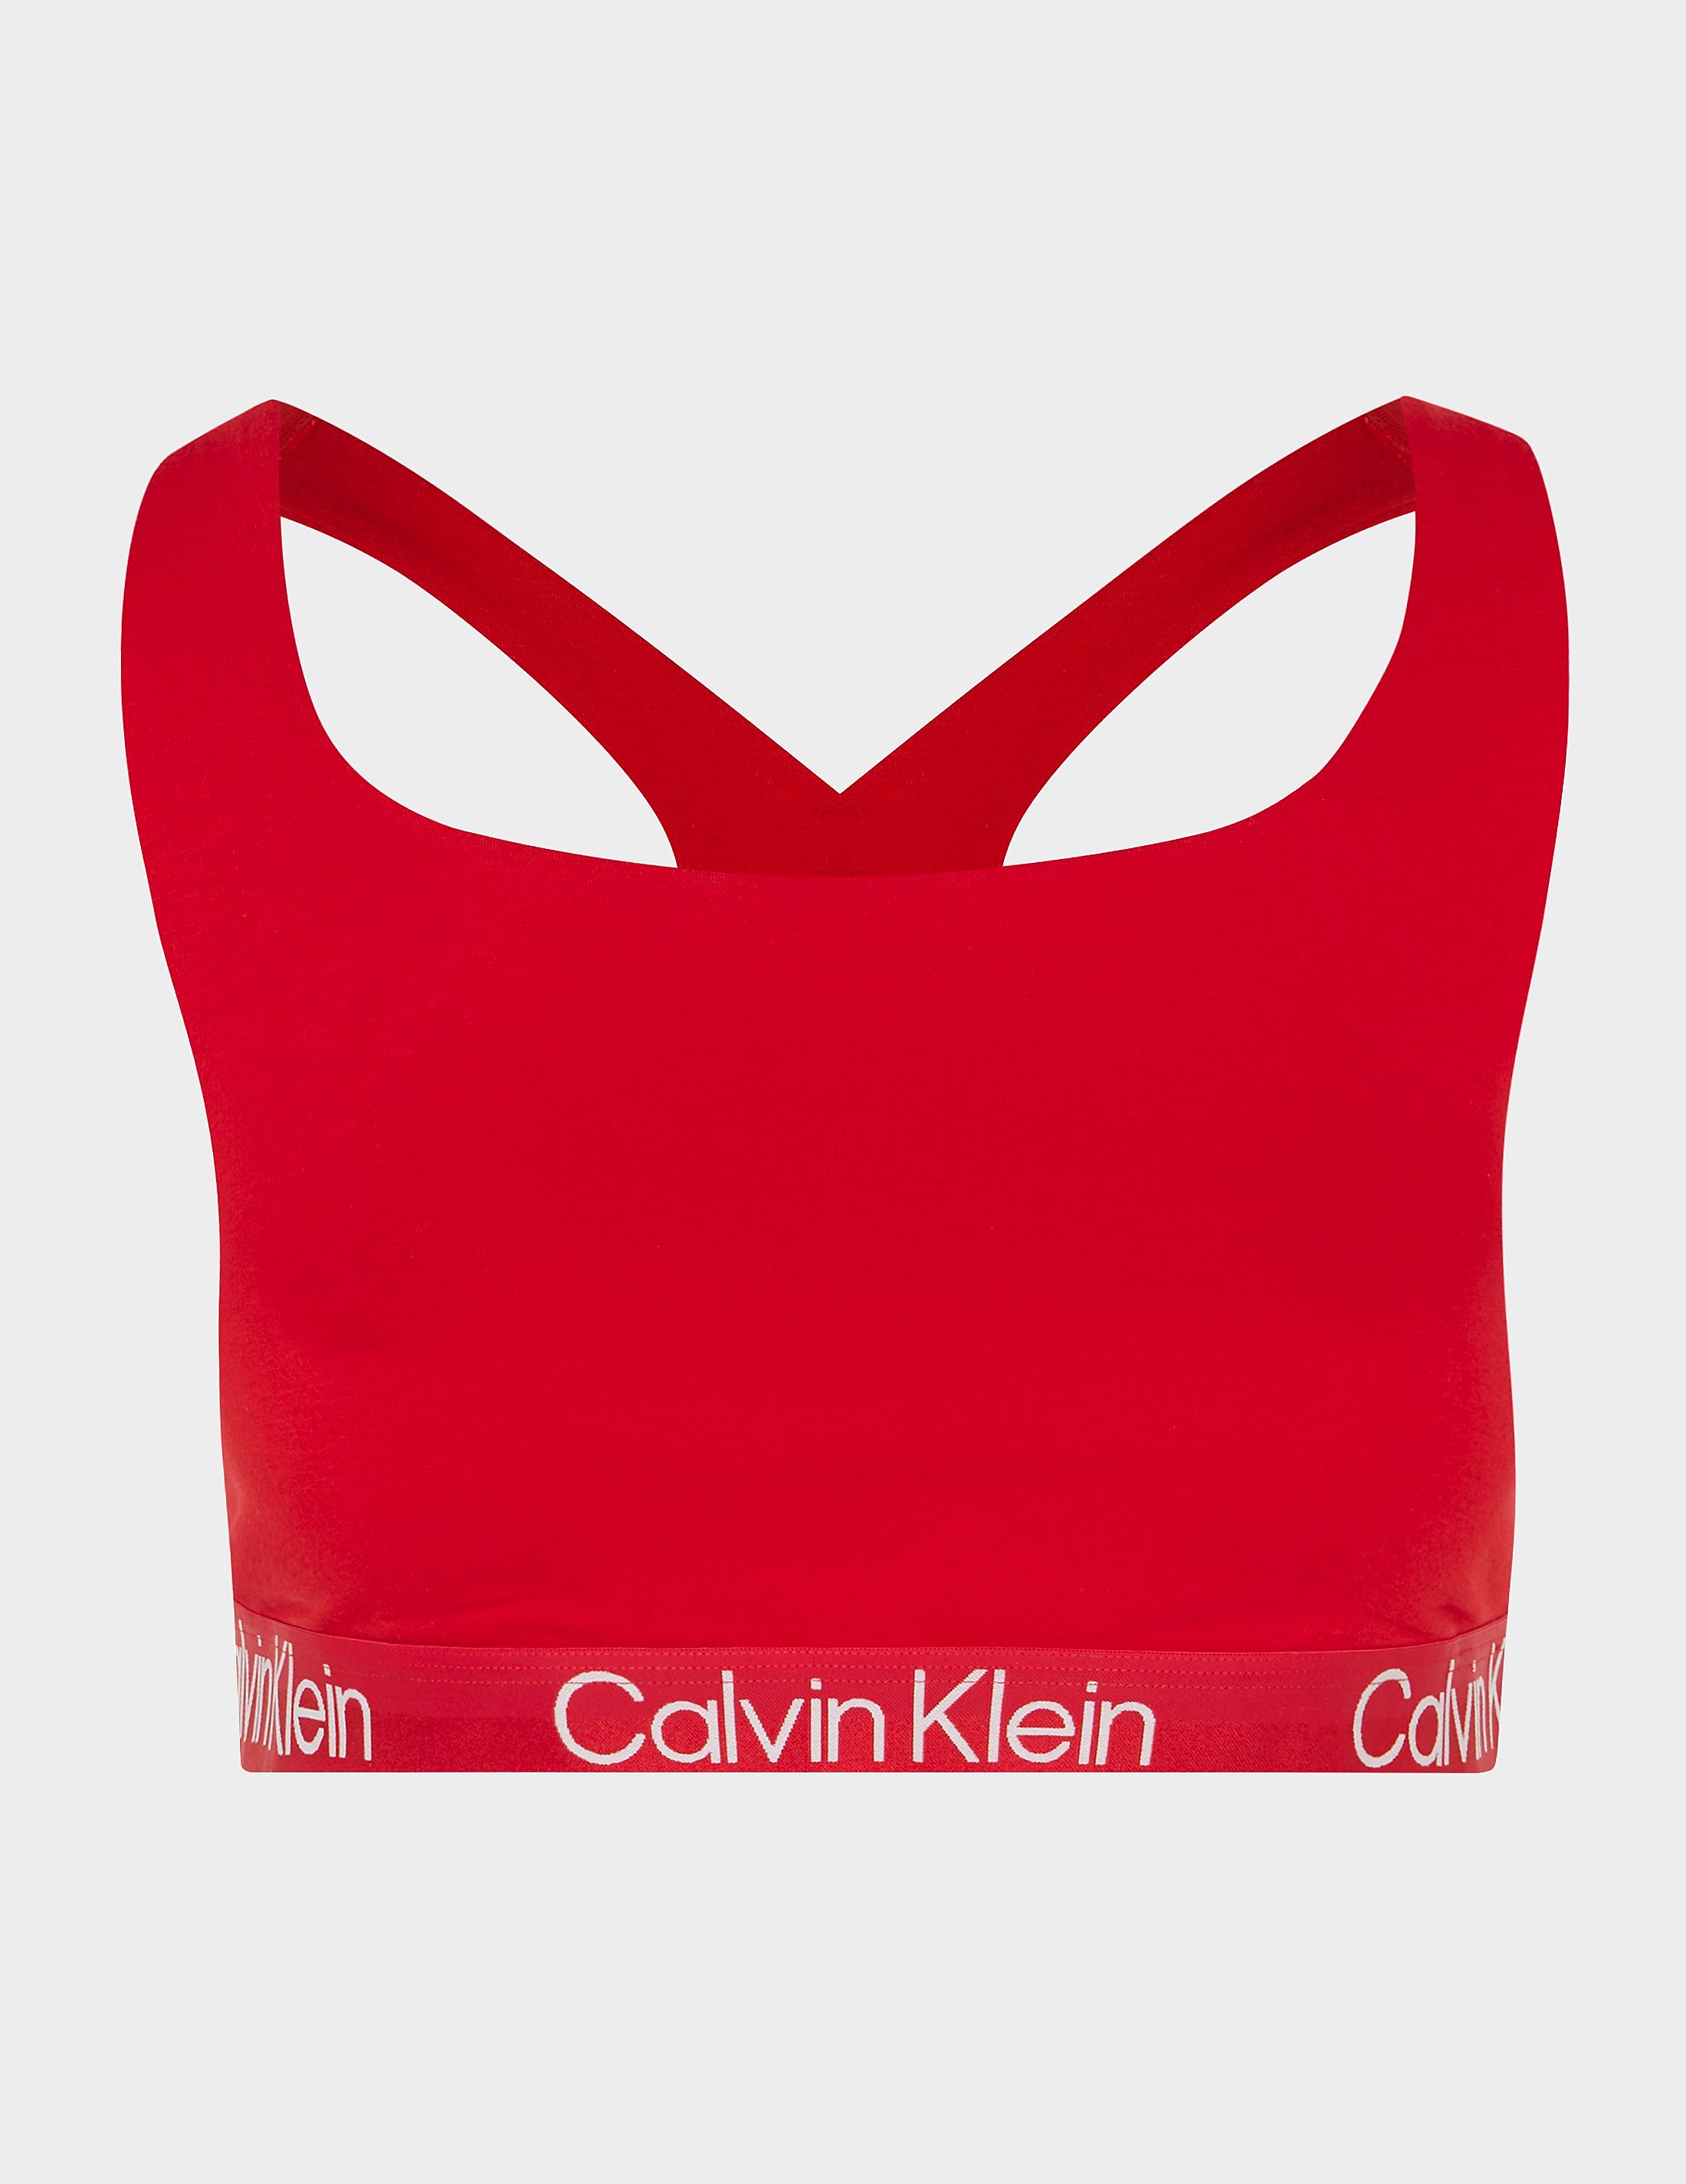 Women's Calvin Klein Underwear Modern Cotton Plus Size Bralette Red, Red product